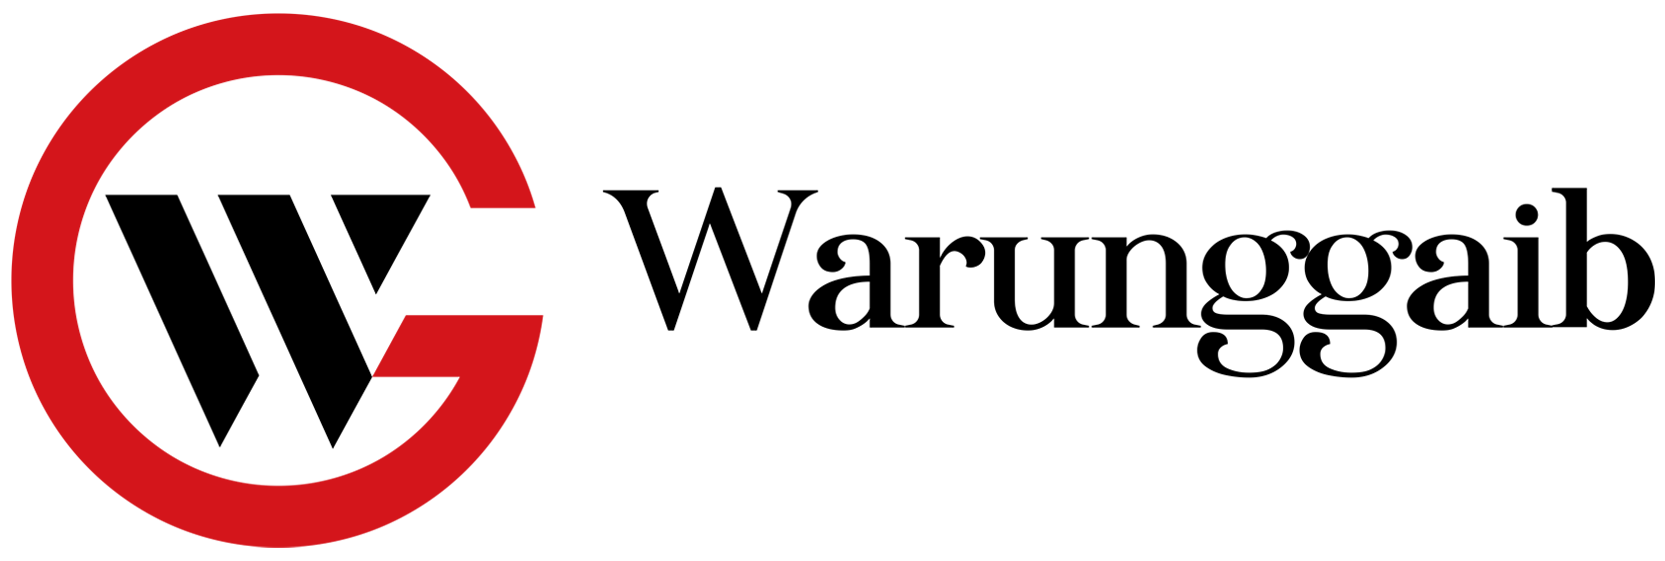 Warunggaib logo